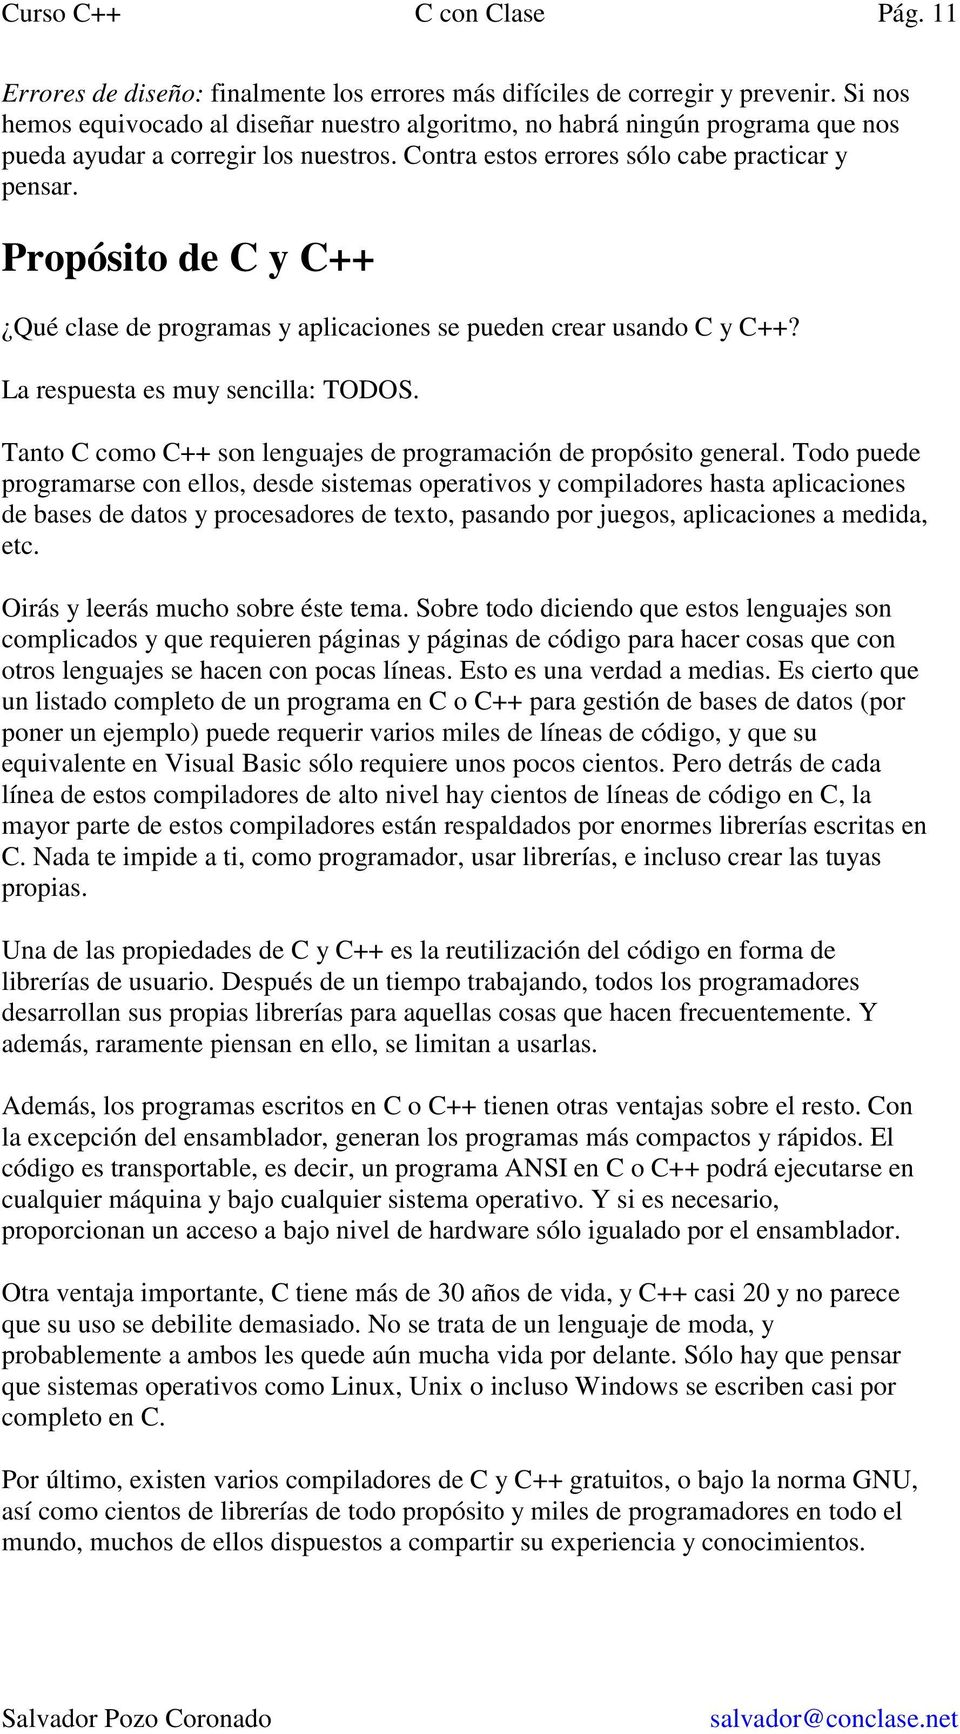 Propósito de C y C++ Qué clase de programas y aplicaciones se pueden crear usando C y C++? La respuesta es muy sencilla: TODOS. Tanto C como C++ son lenguajes de programación de propósito general.